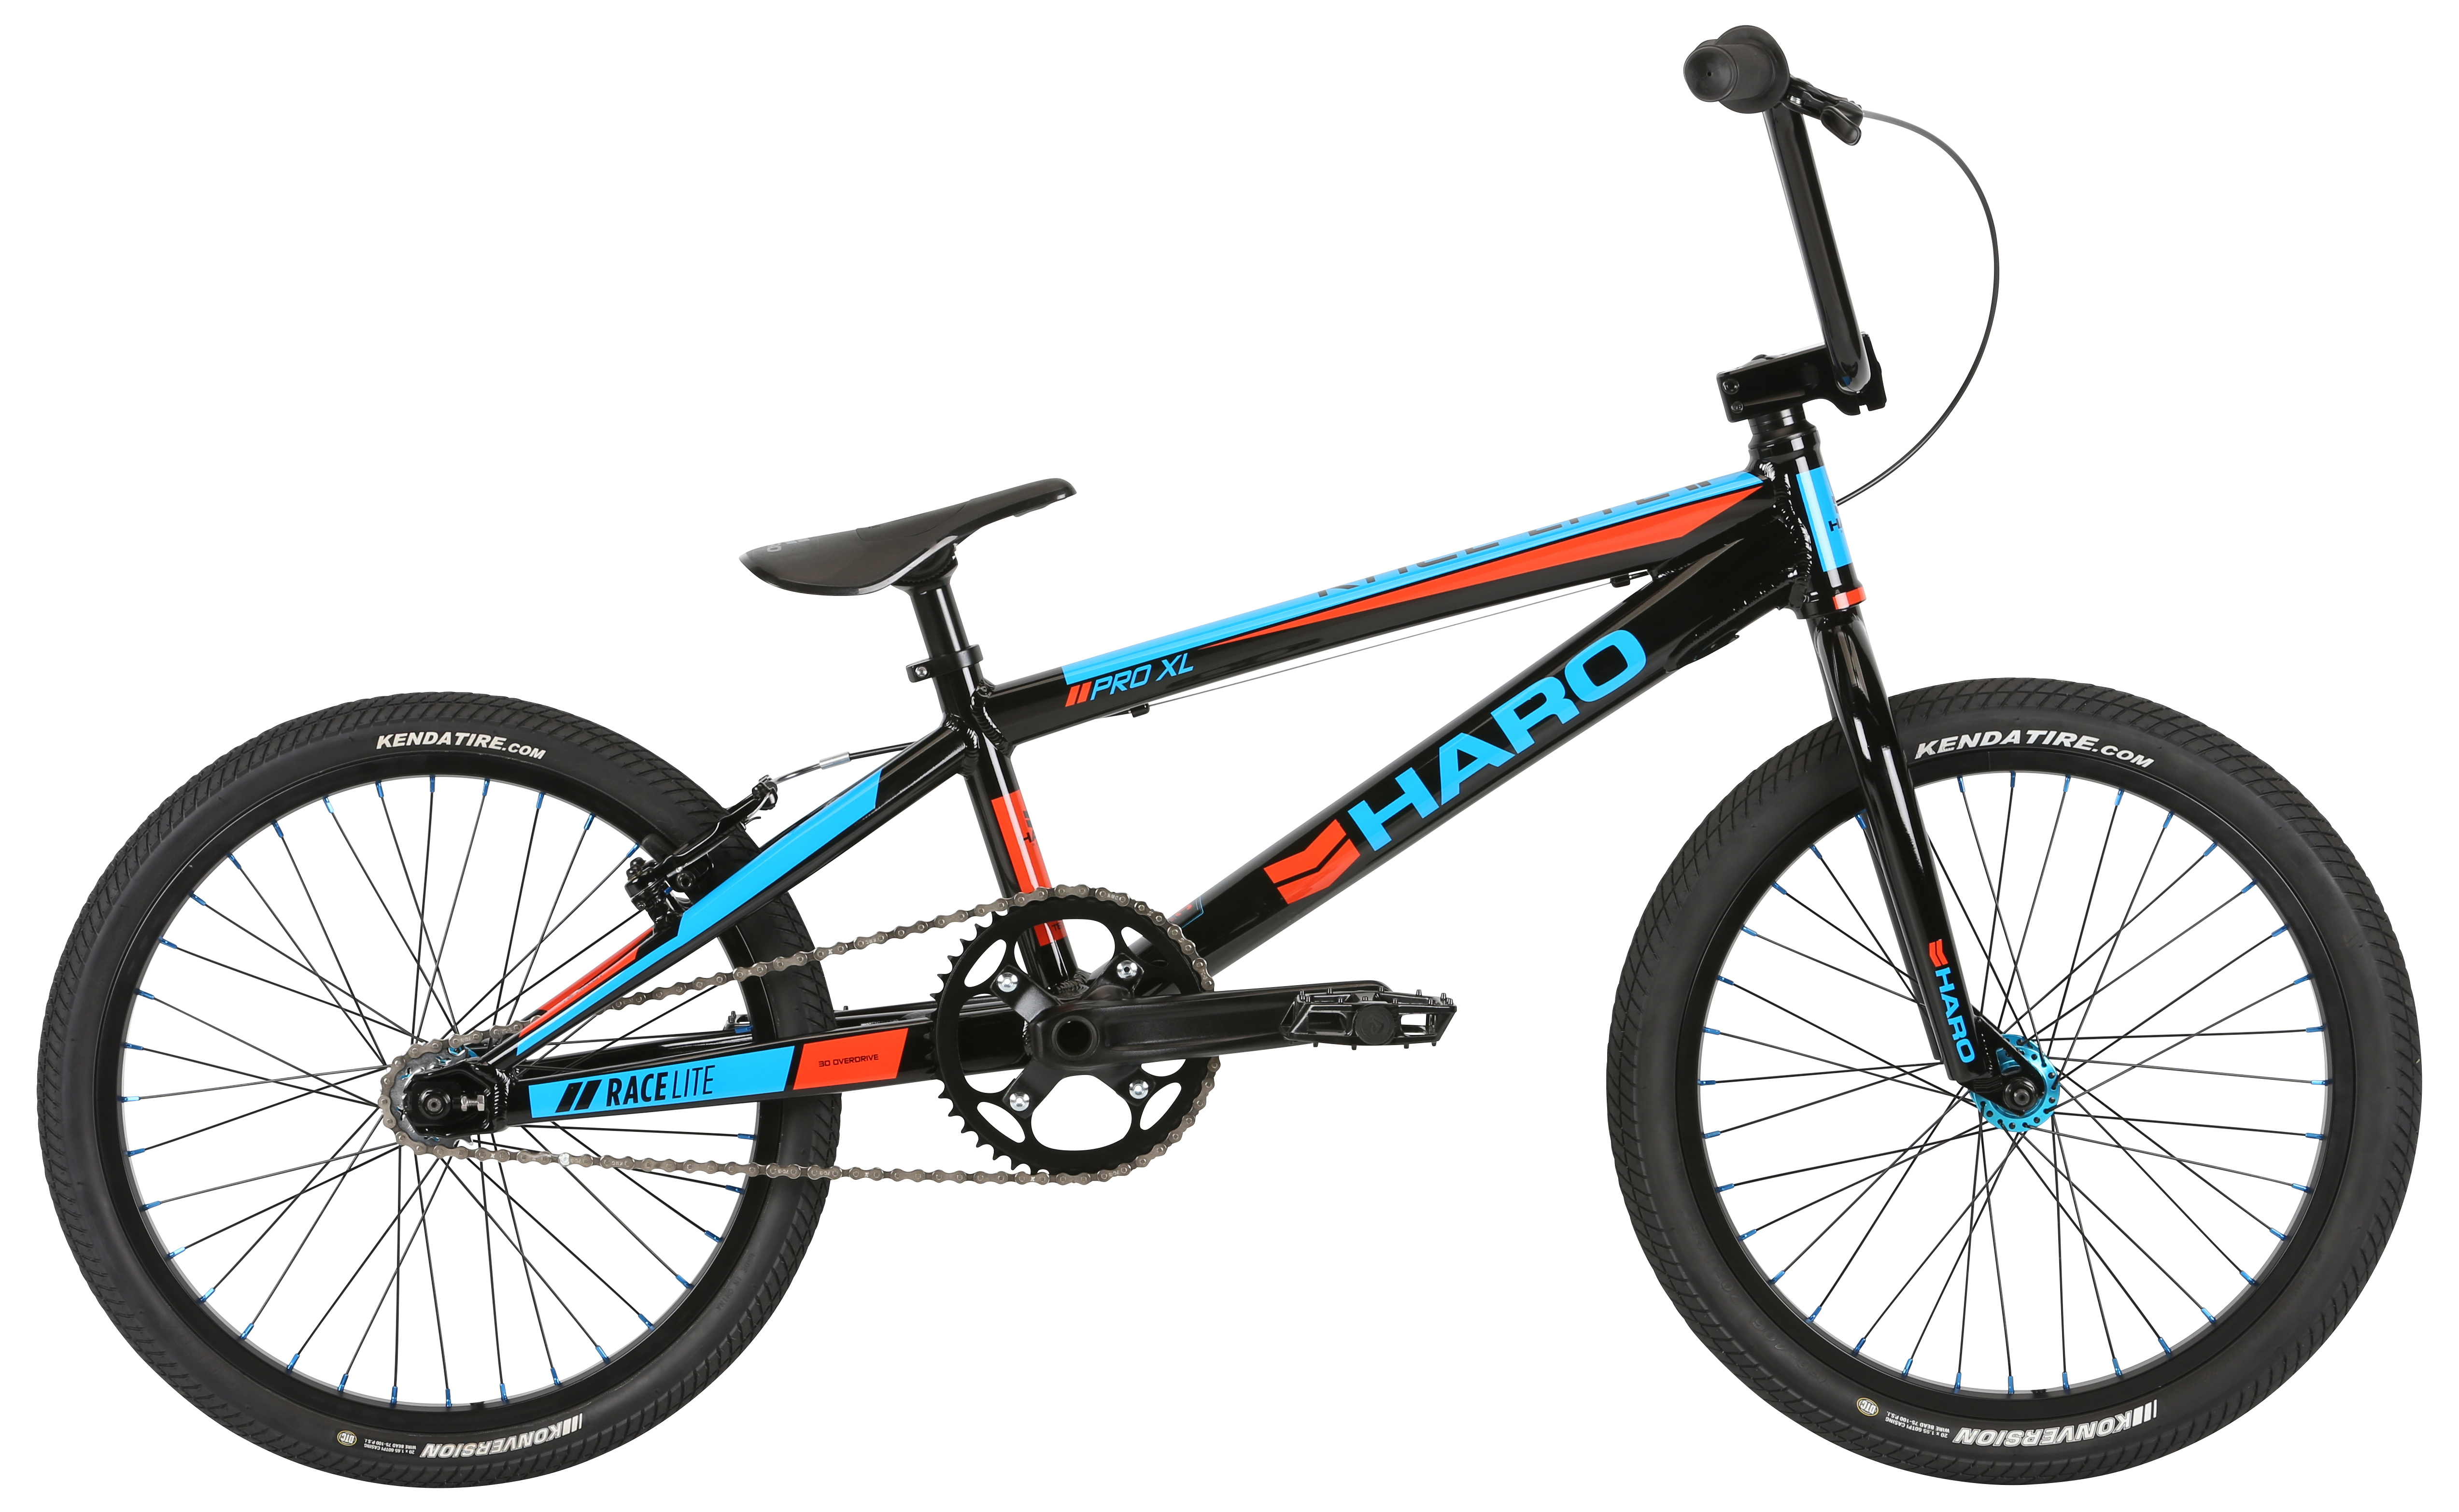  Отзывы о Велосипеде BMX Haro Pro XL 2019